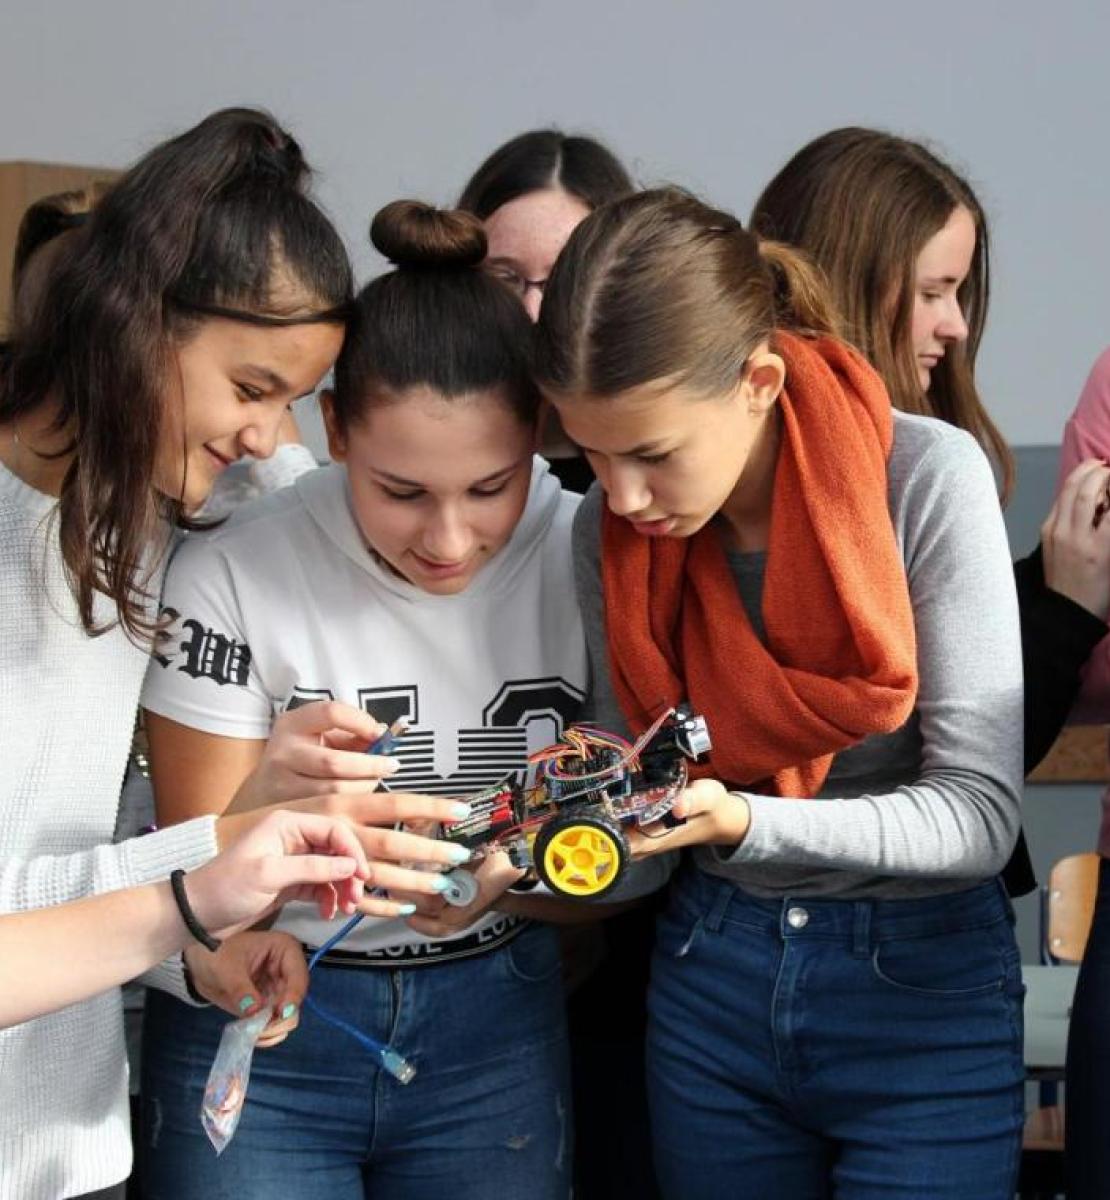 مجموعة من الطالبات يعملن على نموذج سيارة آلية.